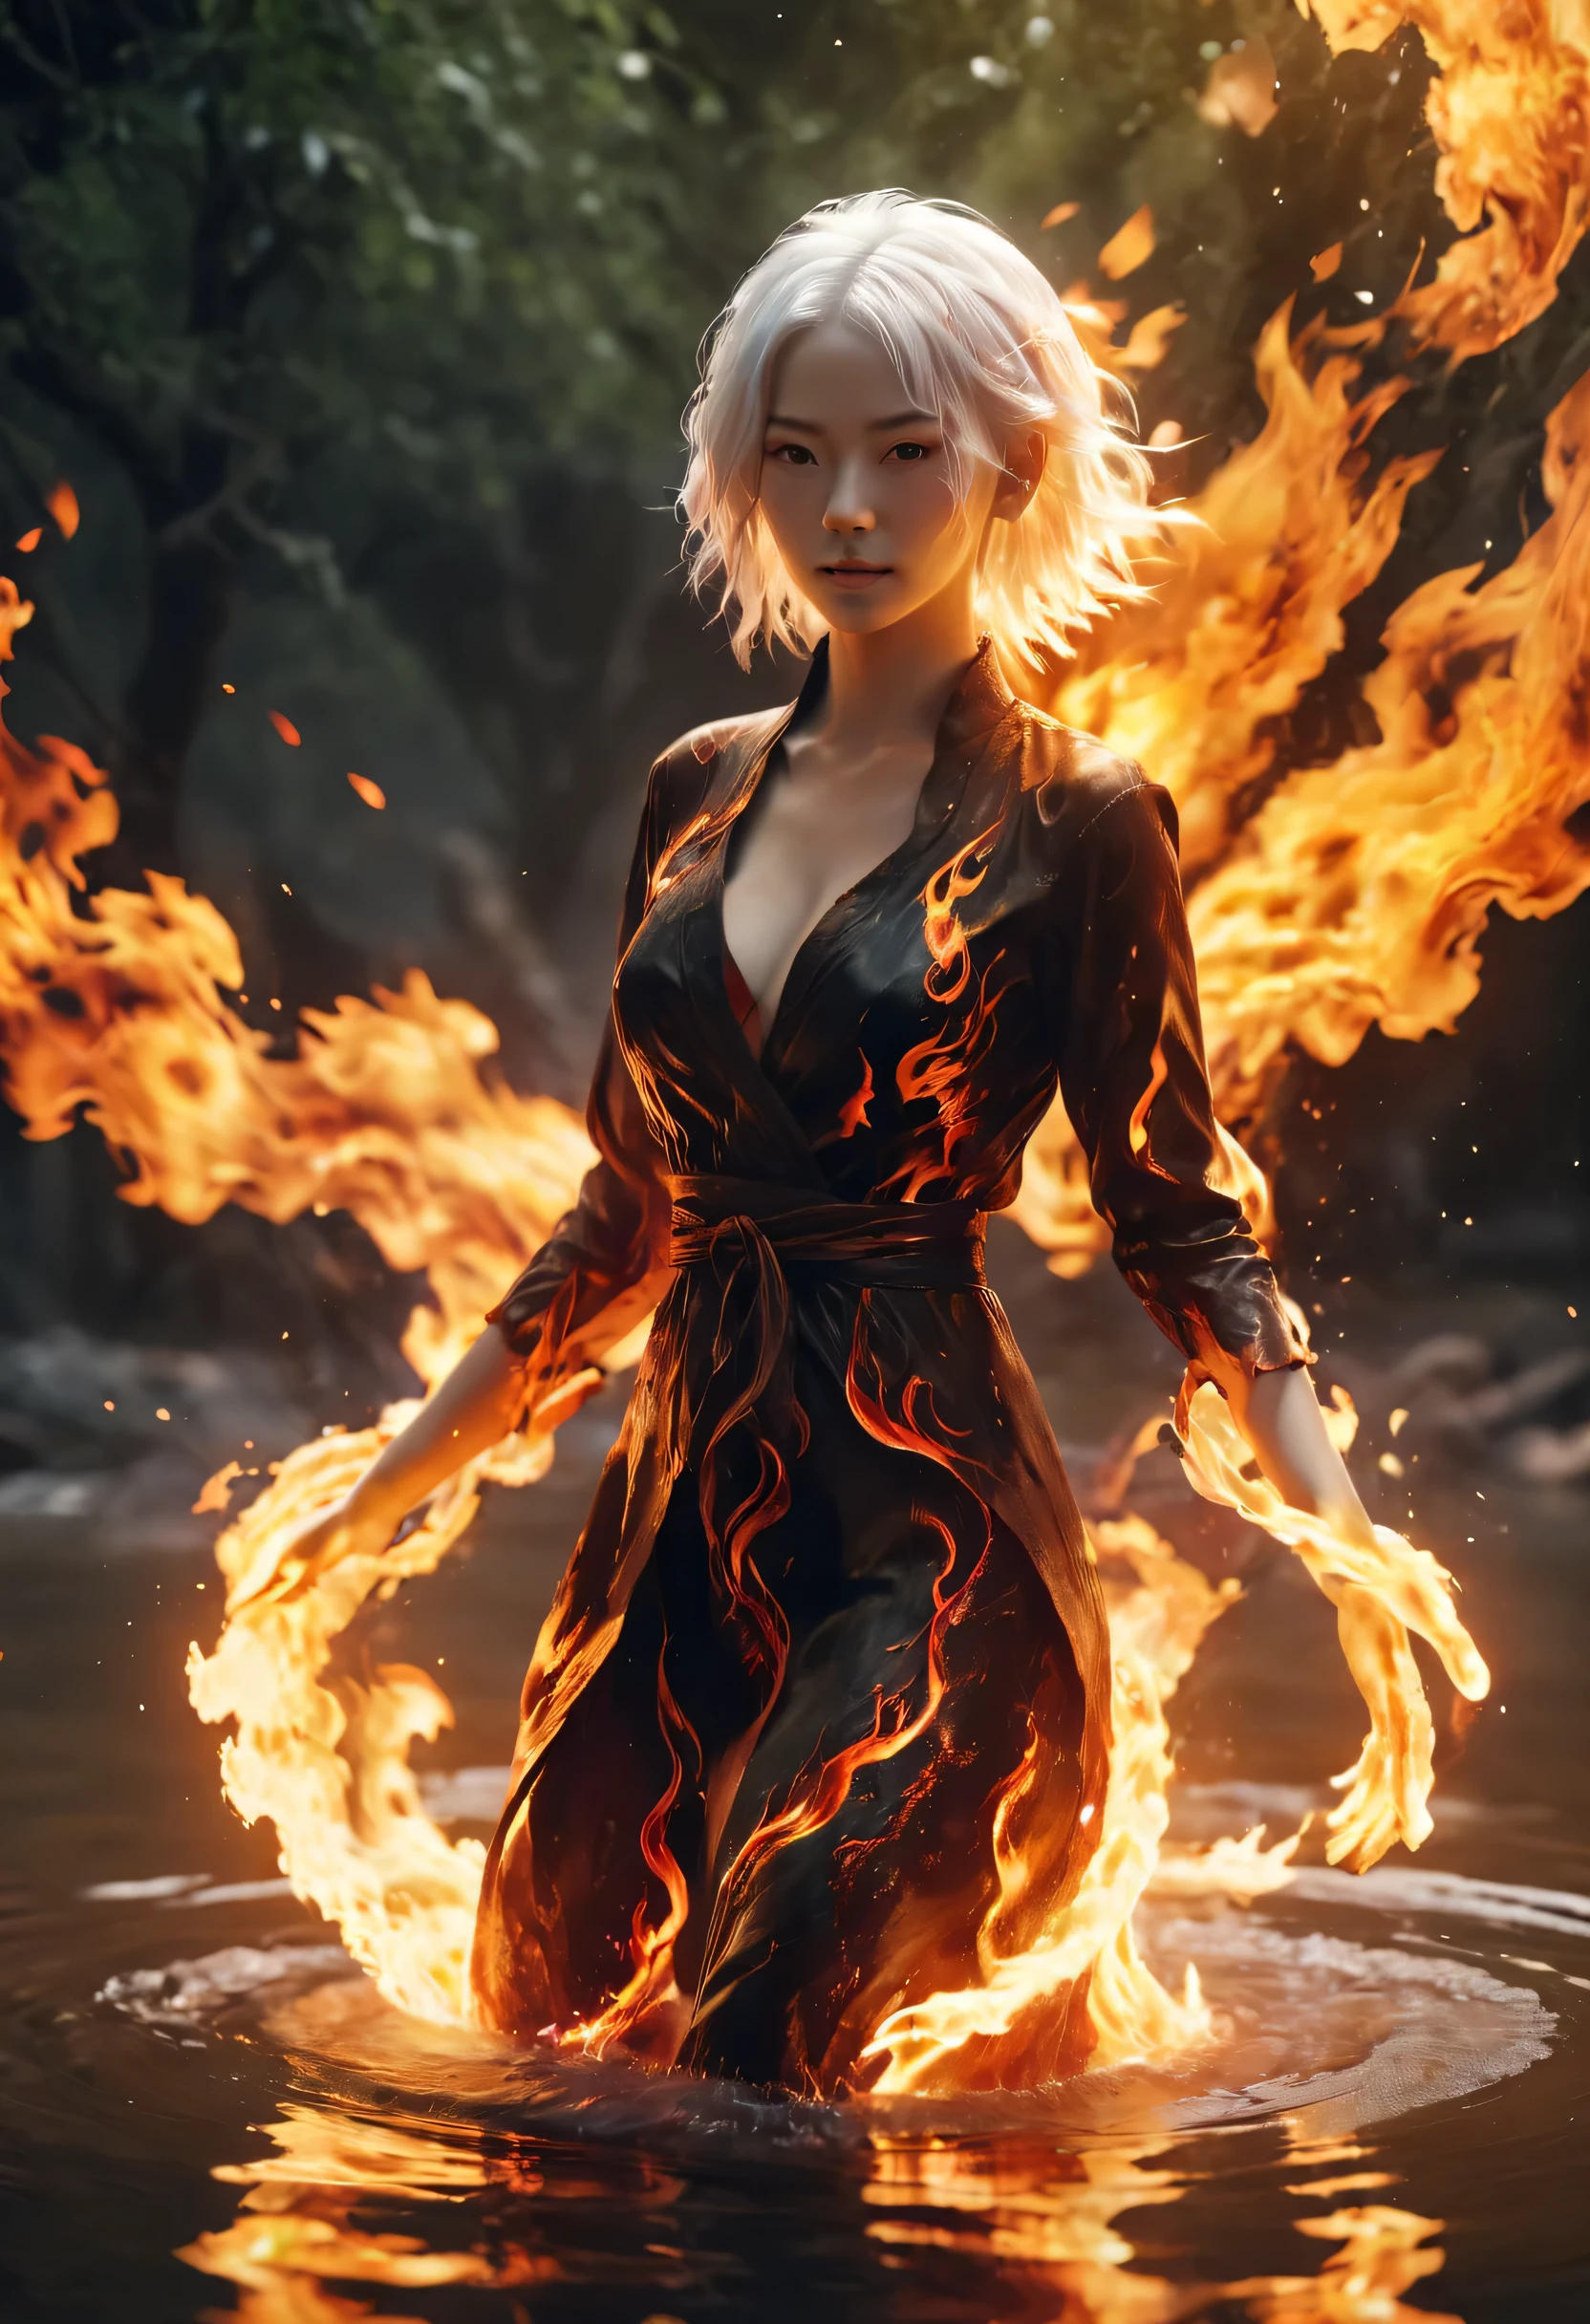 (火焰/火焰/火焰，動態場景:1.3)，一個白髮美女, 站在燃燒的河流中央, 3d 渲染, 虛幻引擎, 背景黑暗且燃燒, 實際的, 火 , 紅色的, 黃色的, 橘子, 黑色的, 擴增實境9:16 